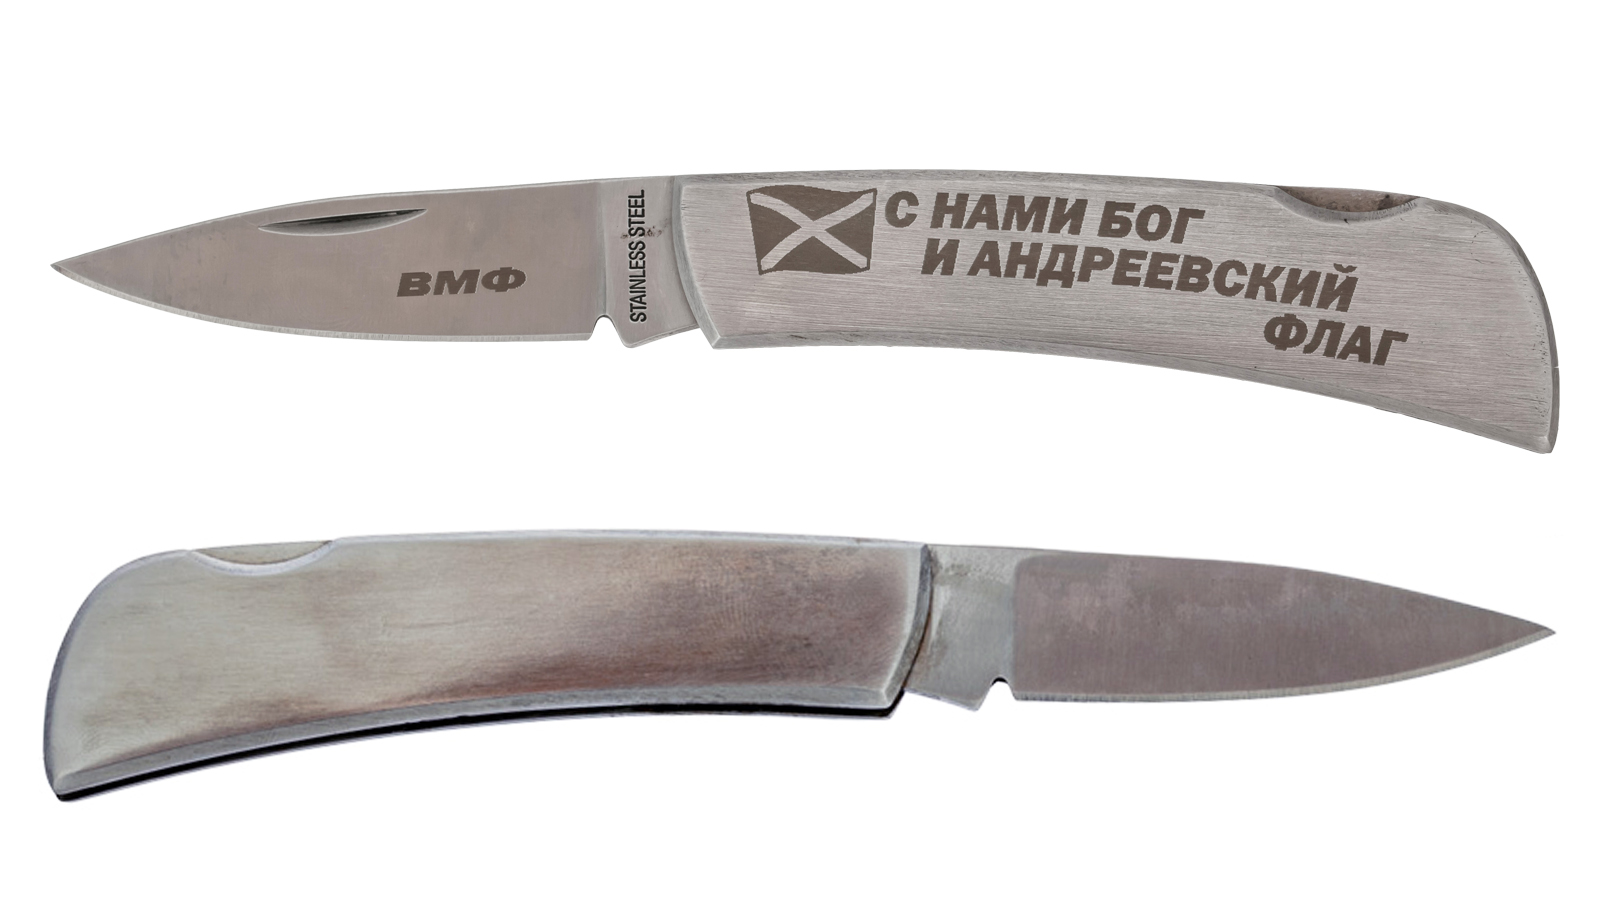 Эксклюзивный нож ВМФ складной с гравировкой от дизайнеров Военпро